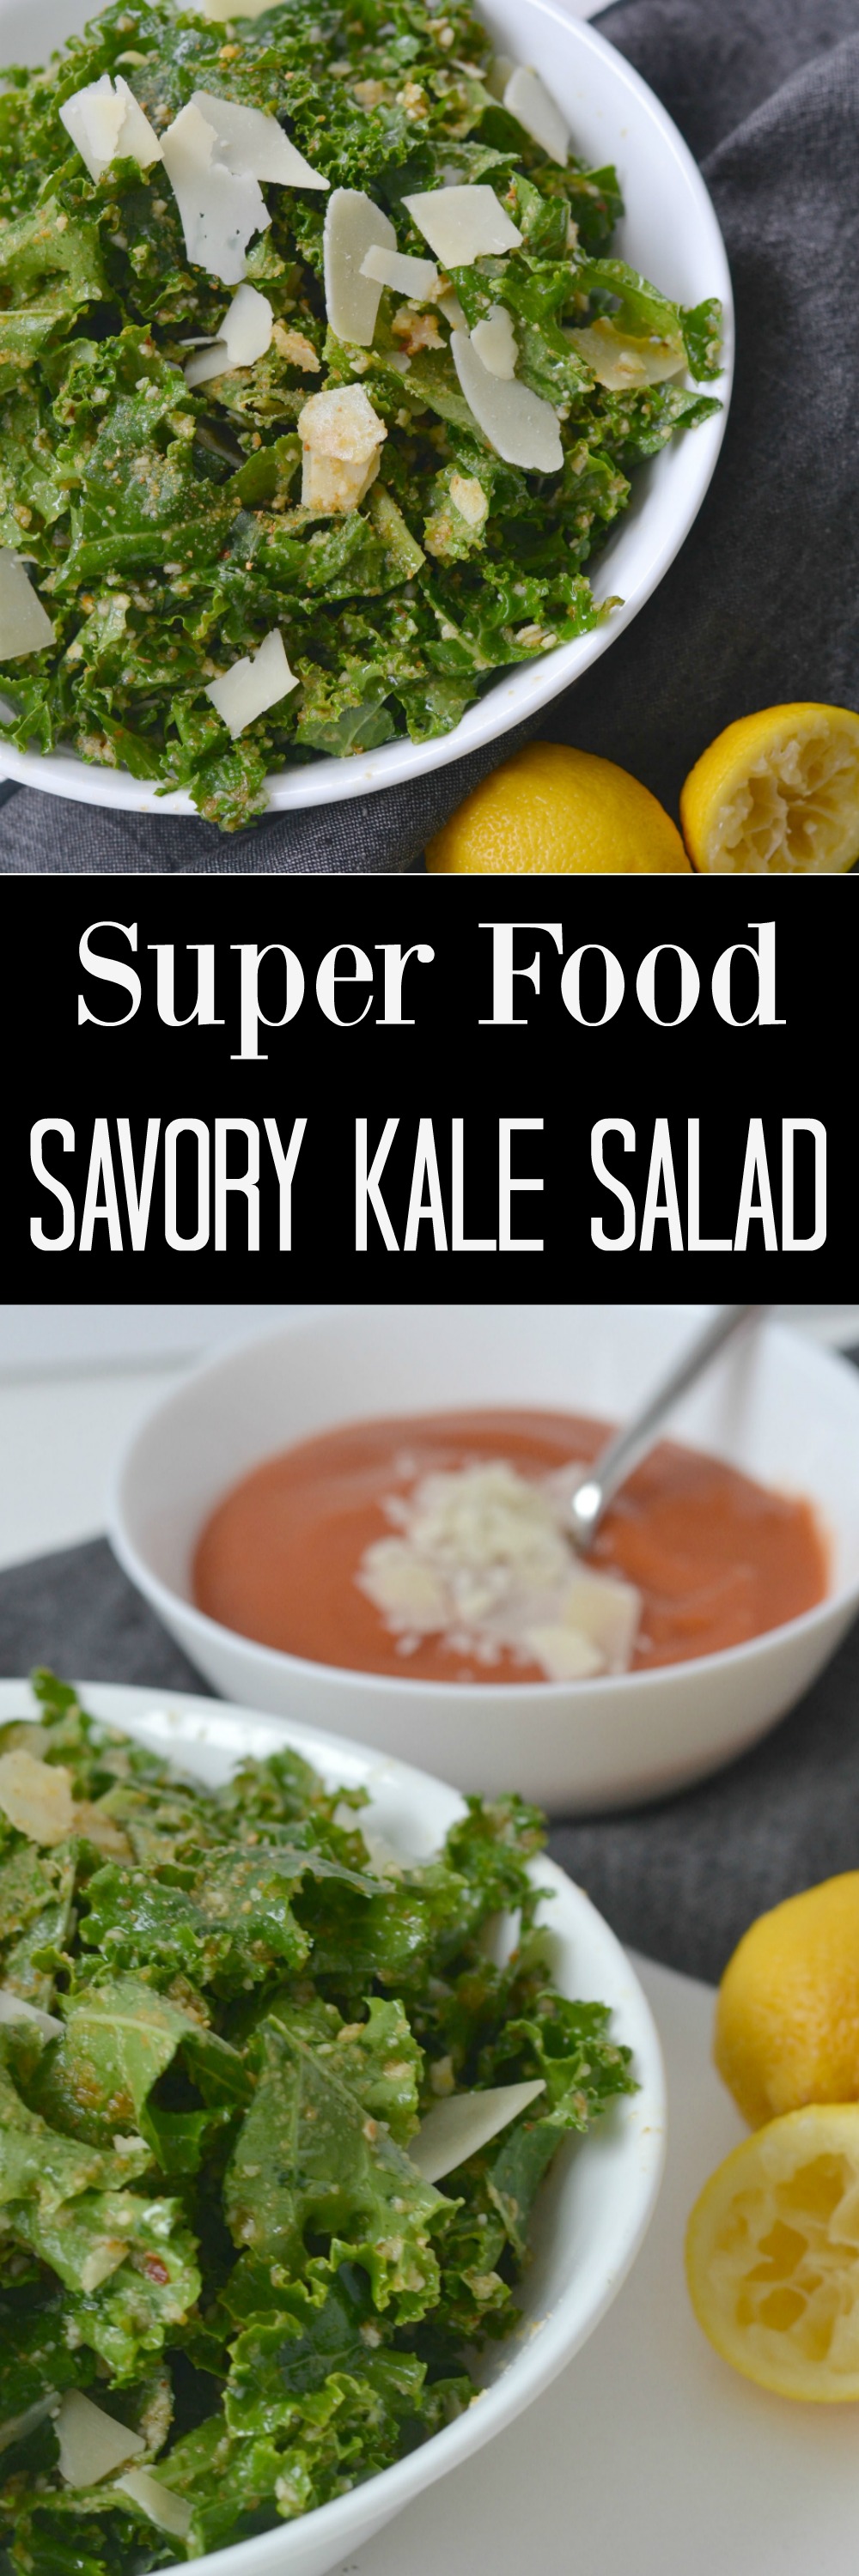 Super Food Savory Kale Salad